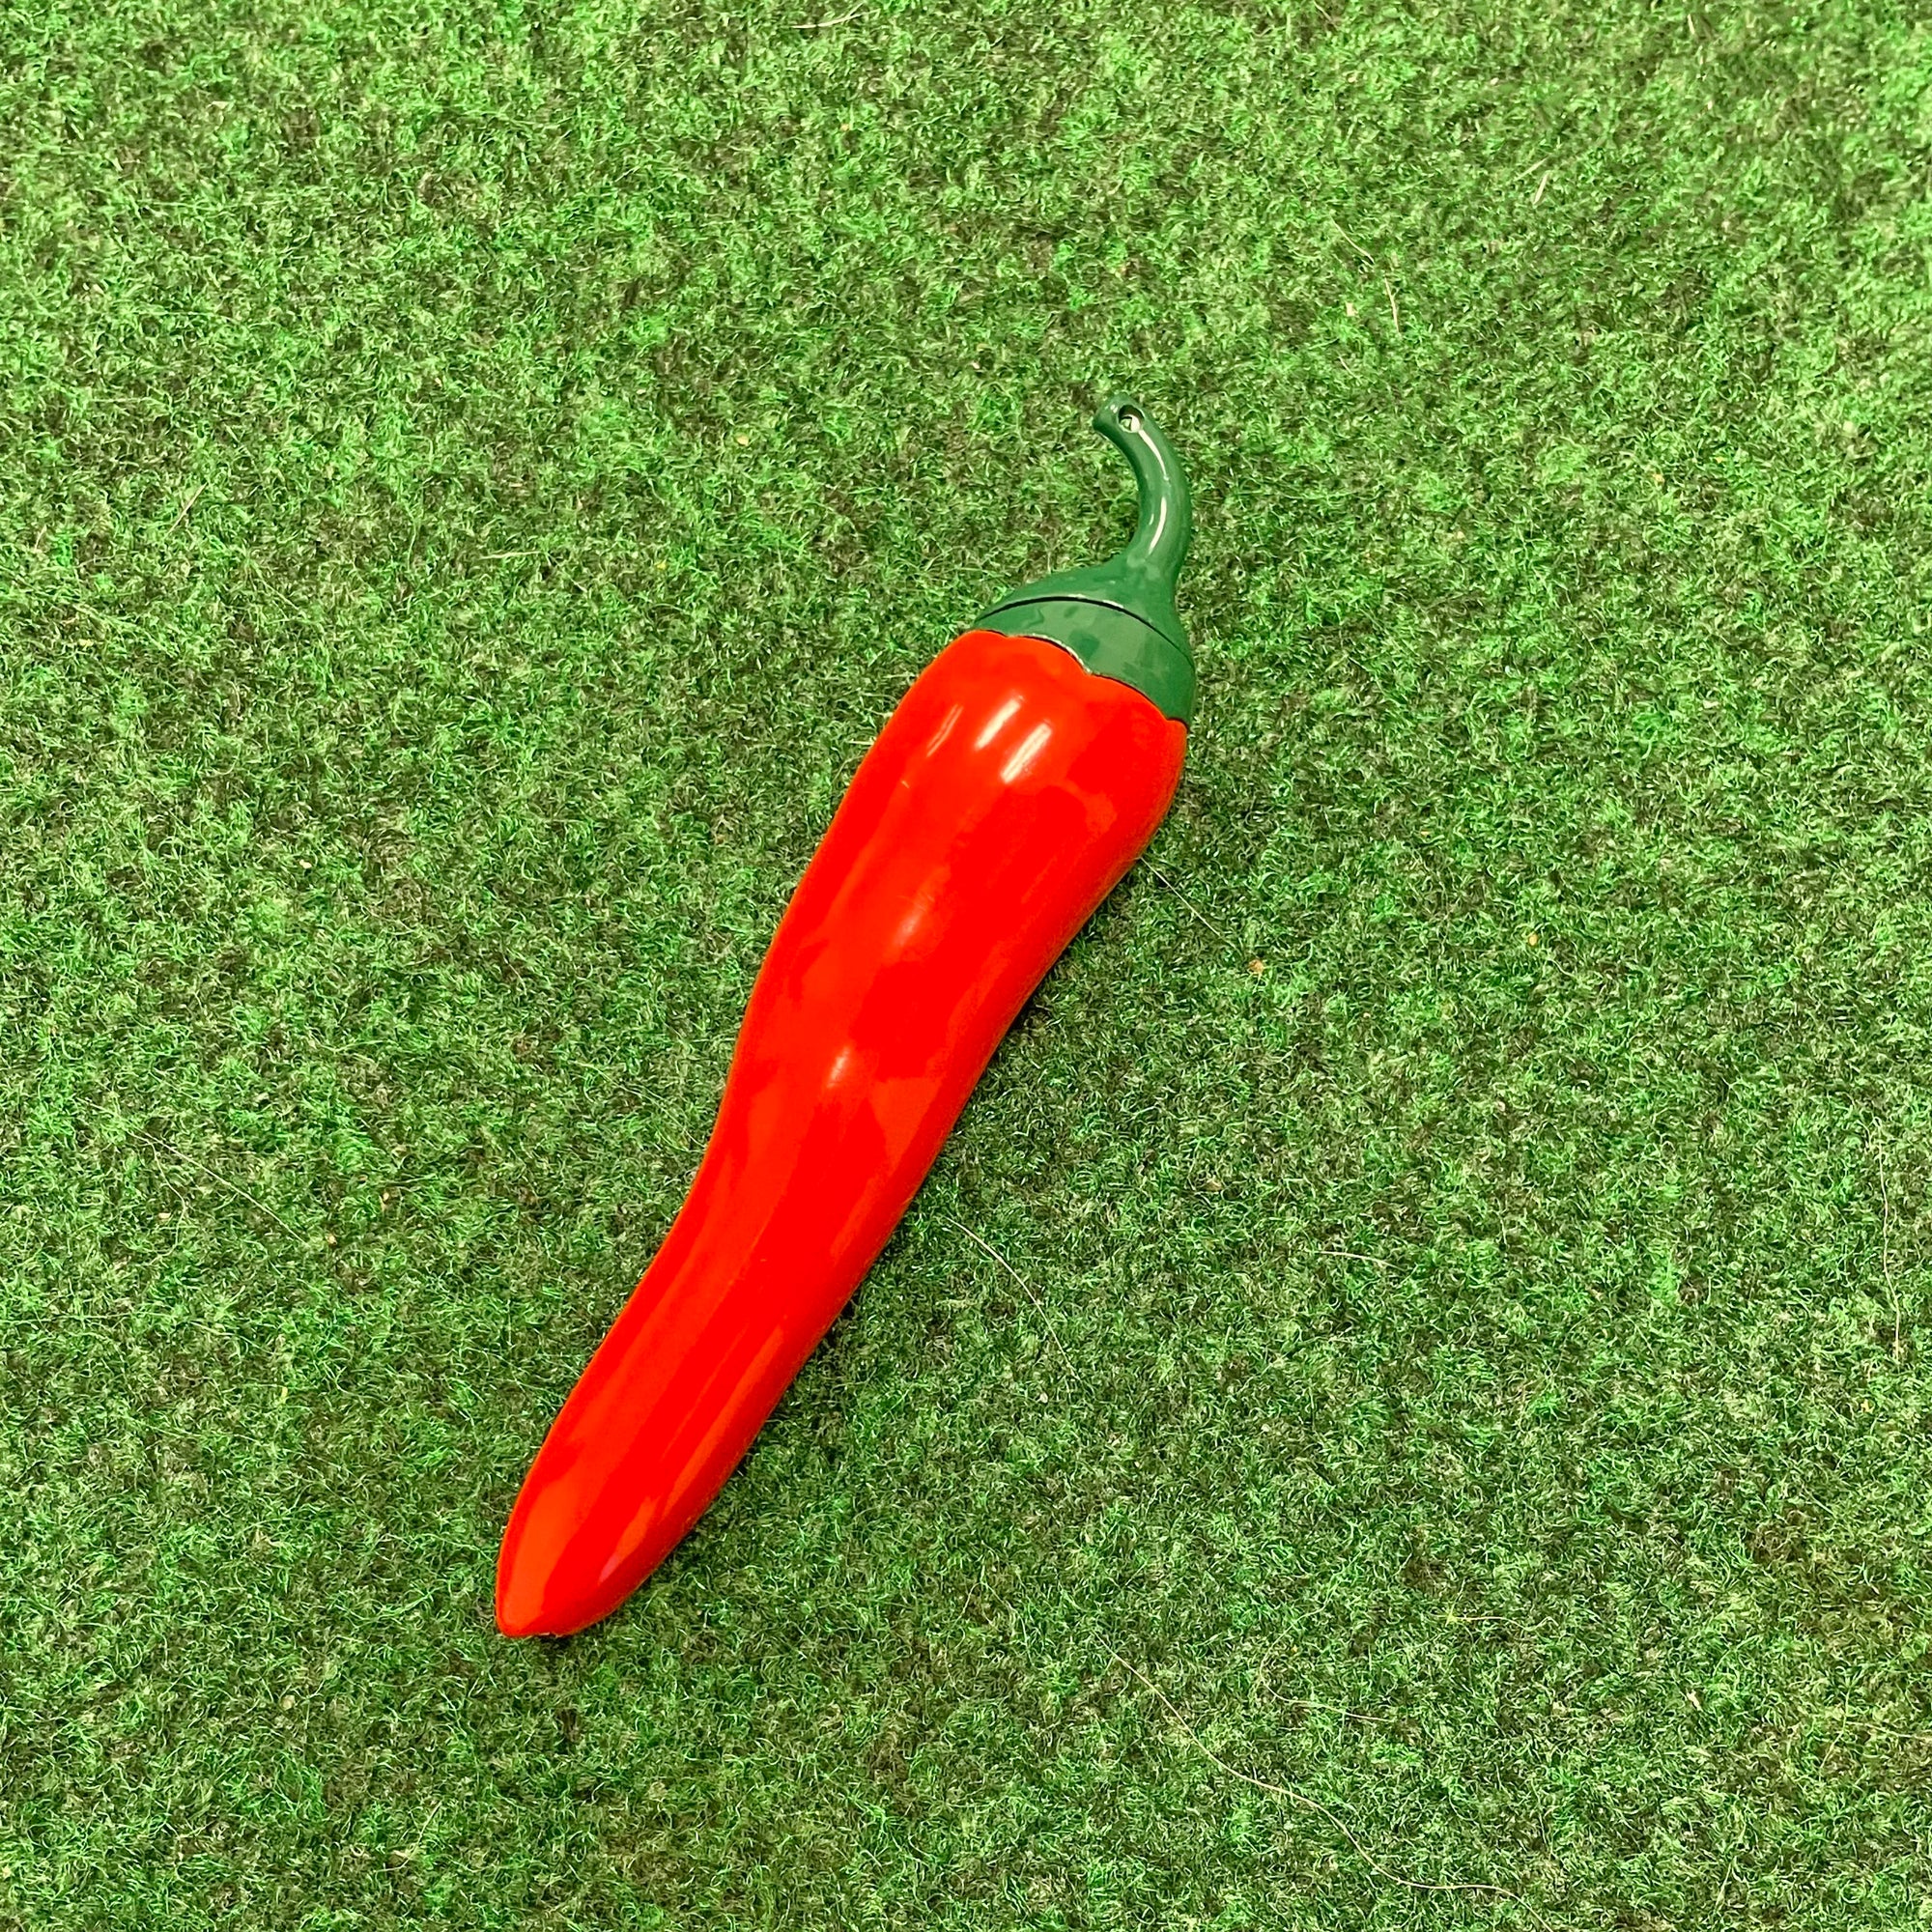 Hot pepper! Lighter